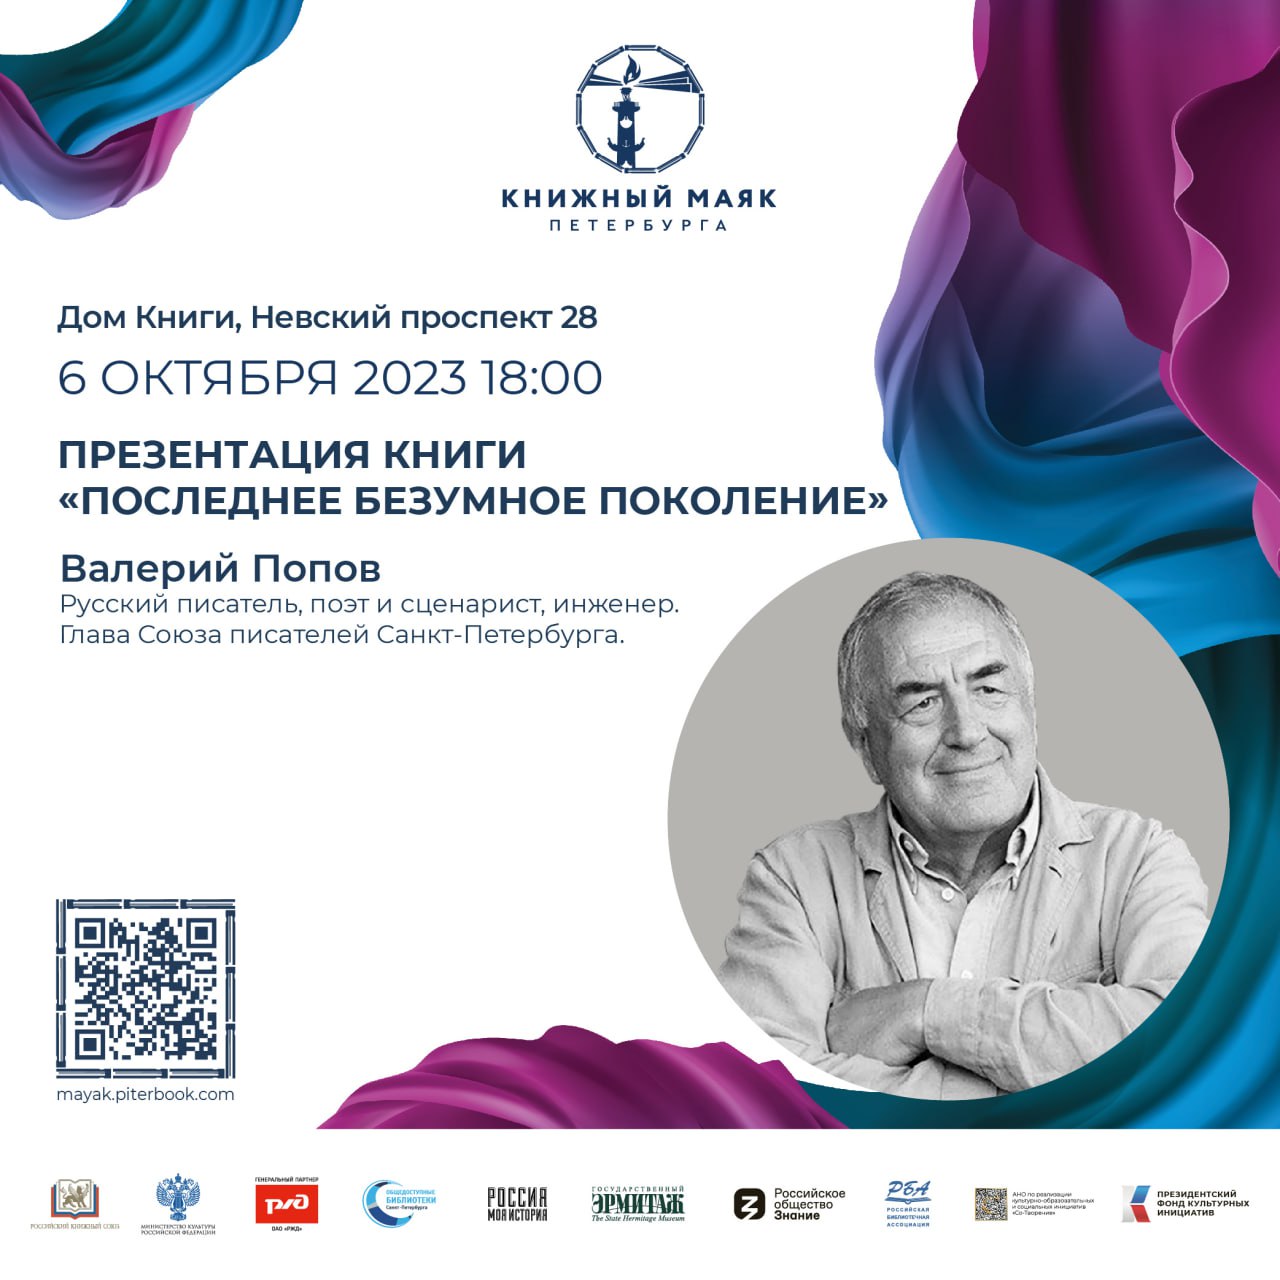 Уже сегодня состоится презентация новой книги Валерия Попова «Последнее безумное поколение».